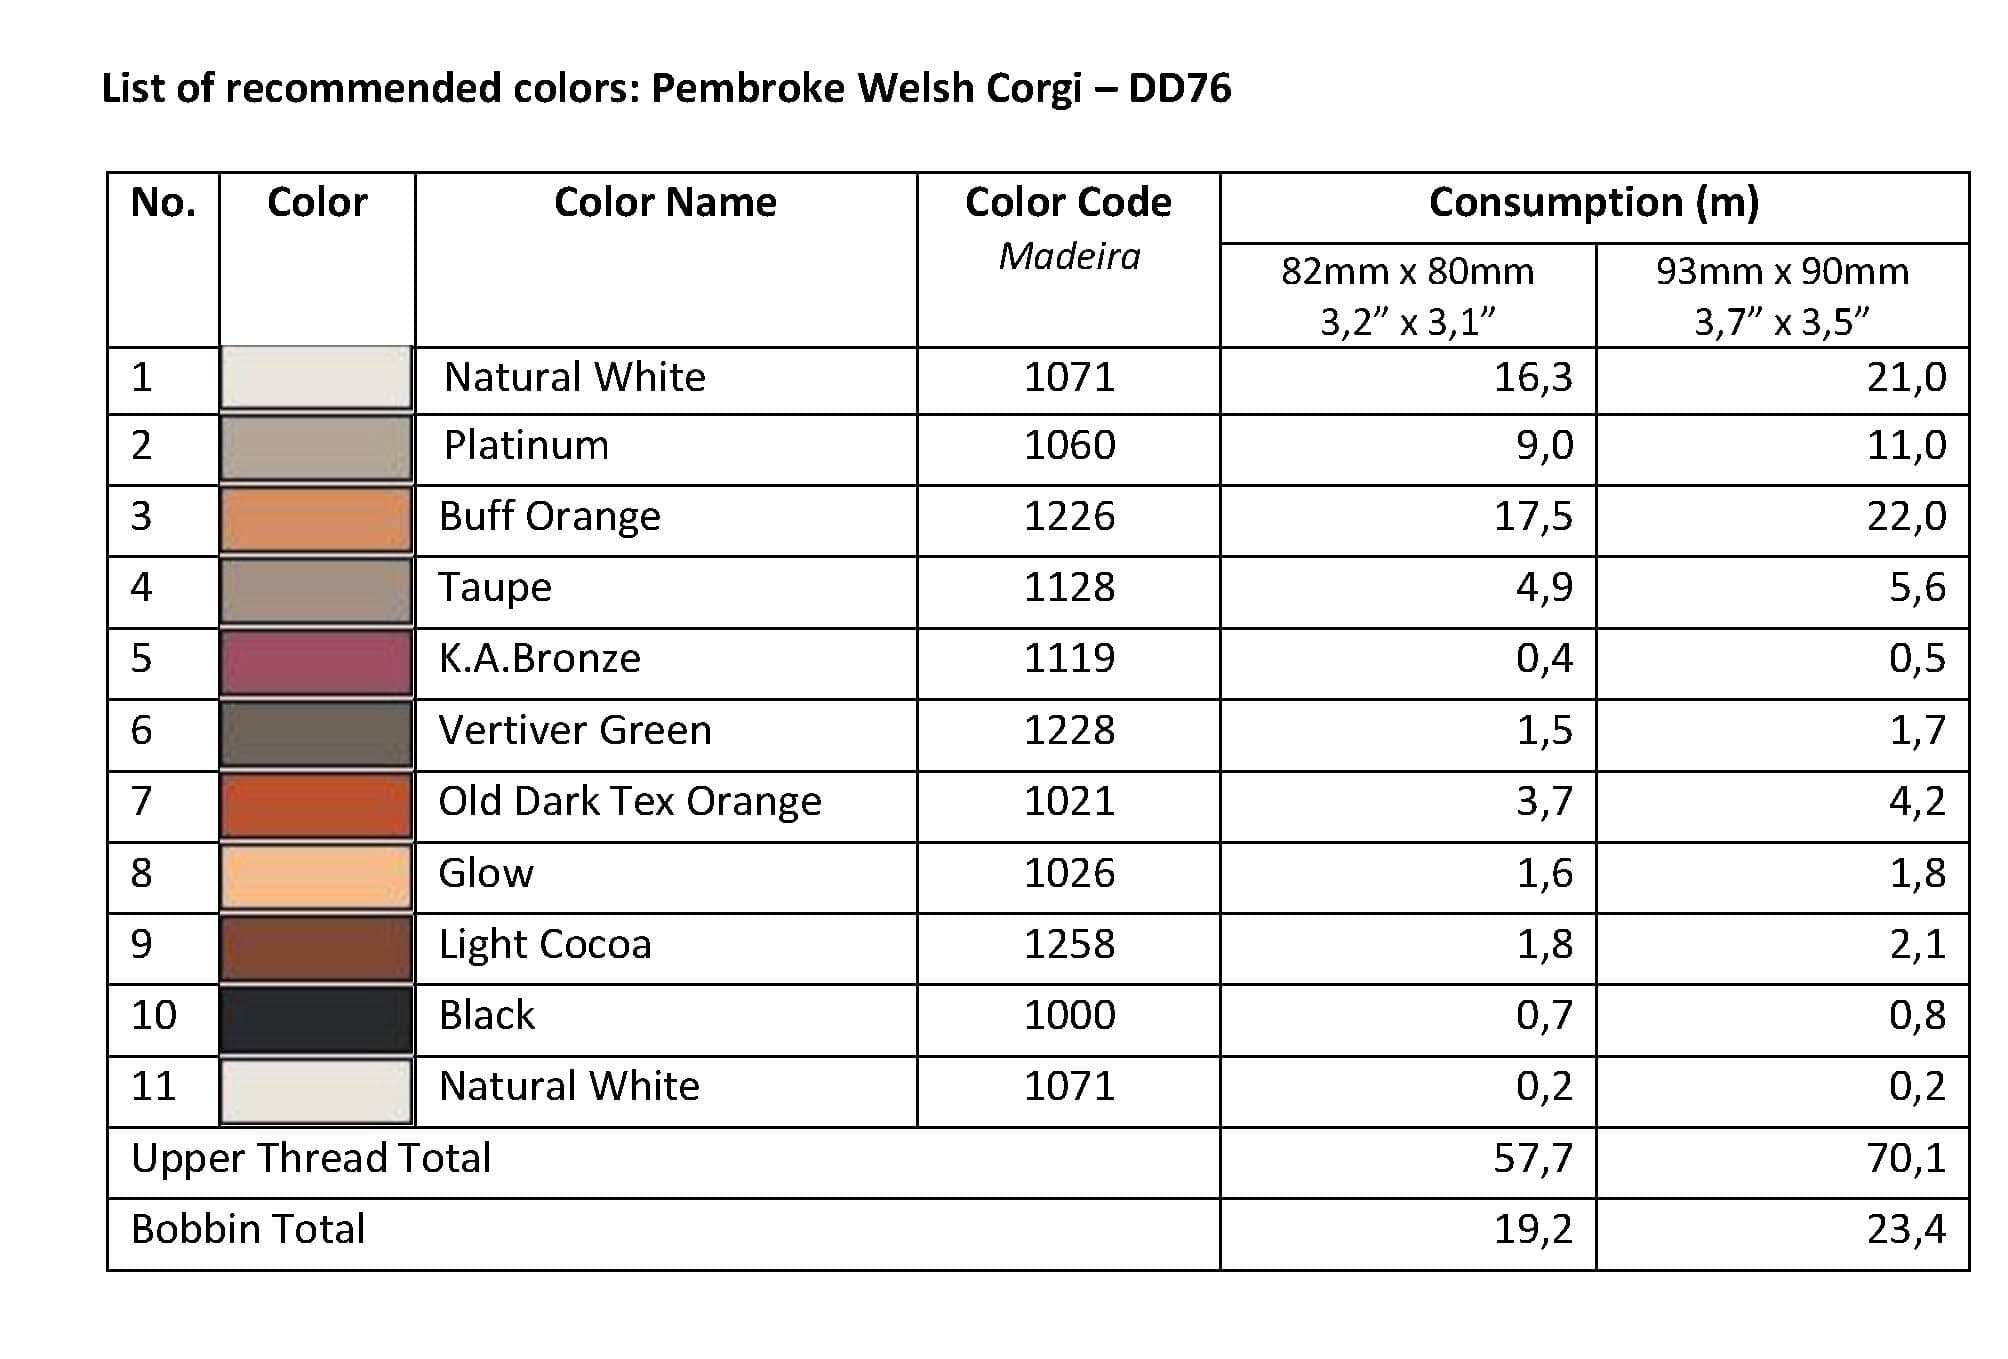 List of Recommended Colors -  Pembroke WelshCorgi DD76